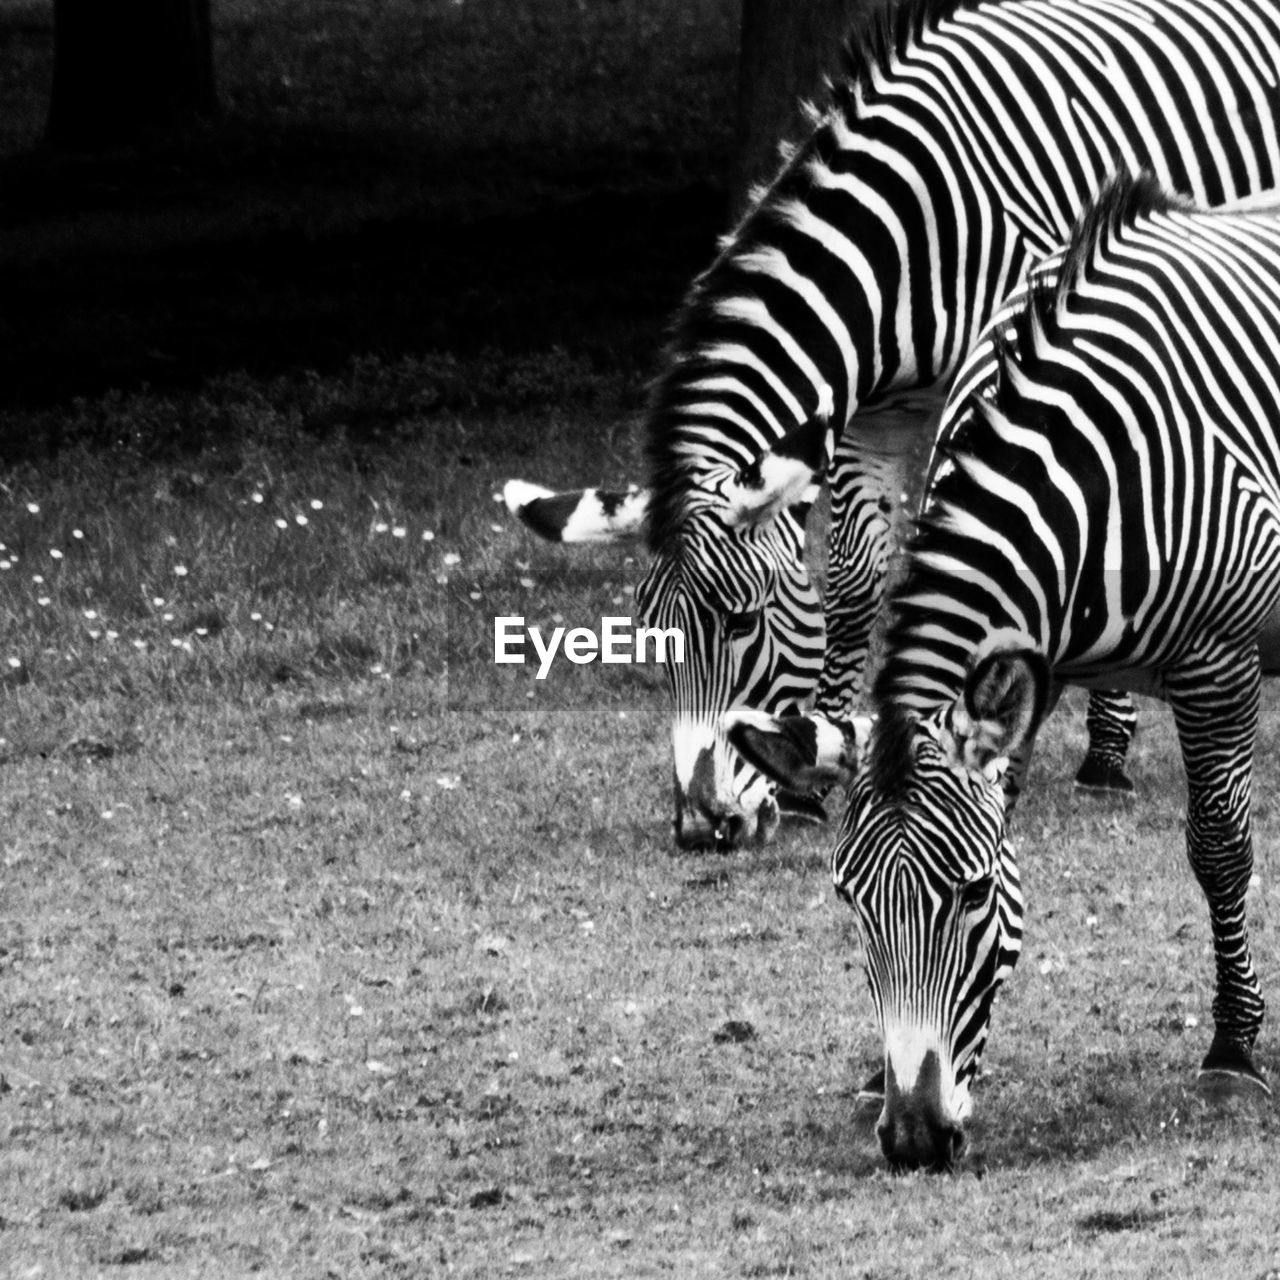 Zebras grazing on grassy field